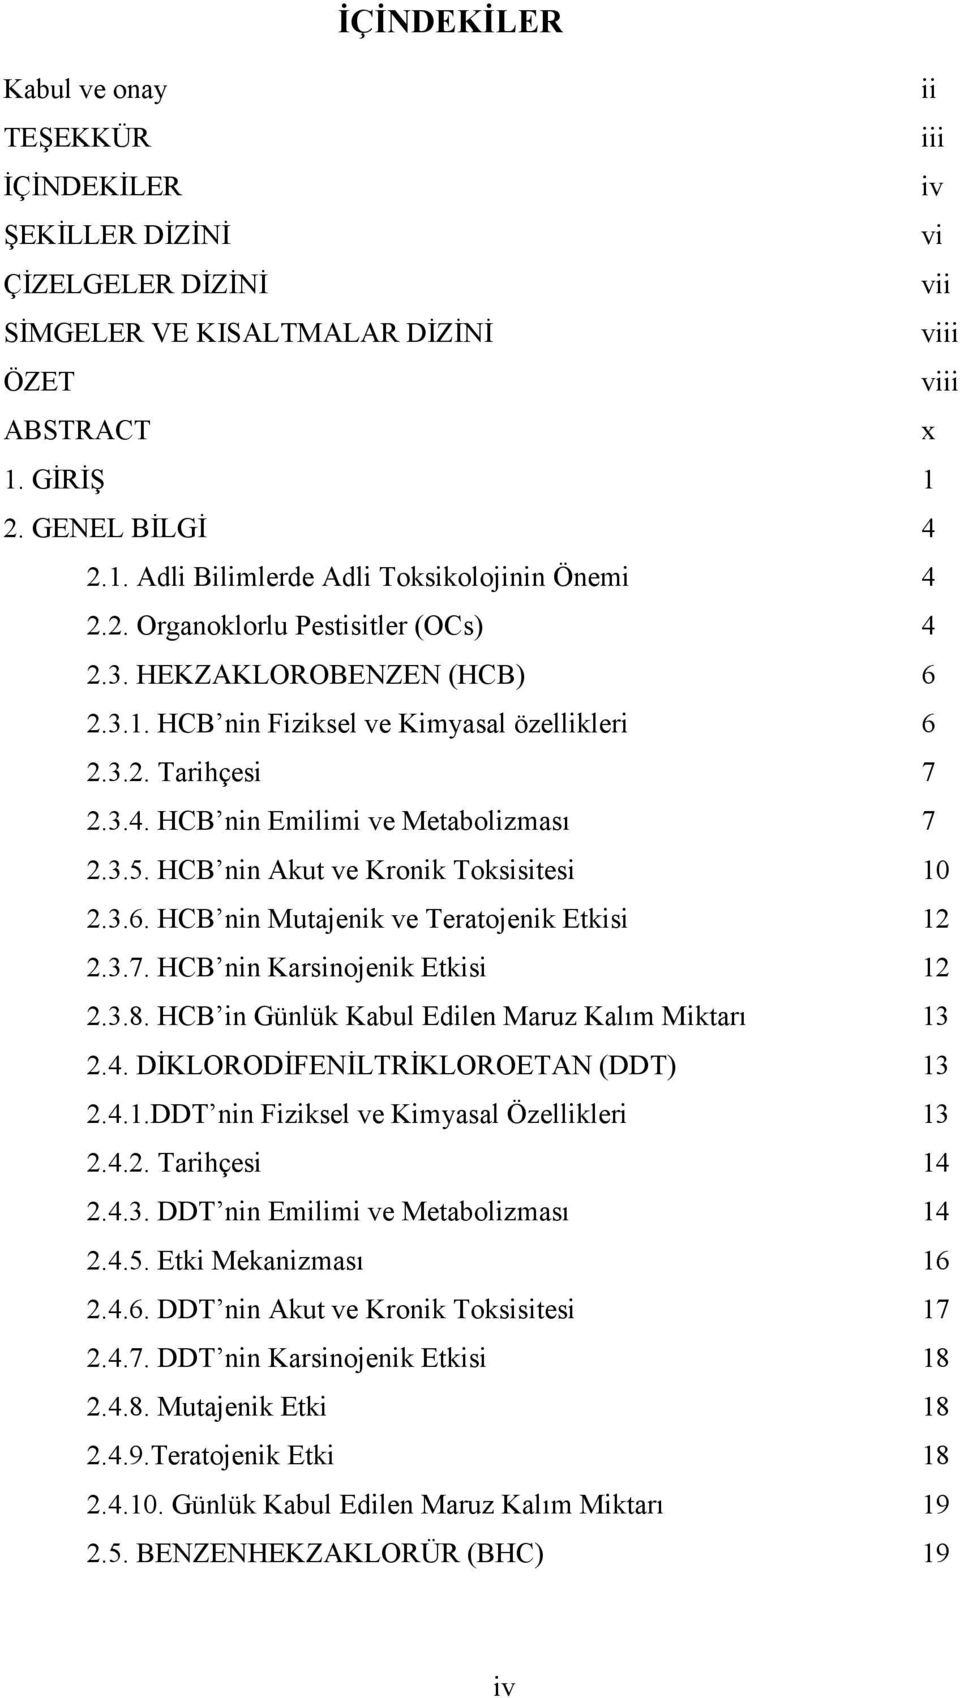 3.4. HCB nin Emilimi ve Metabolizması 7 2.3.5. HCB nin Akut ve Kronik Toksisitesi 10 2.3.6. HCB nin Mutajenik ve Teratojenik Etkisi 12 2.3.7. HCB nin Karsinojenik Etkisi 12 2.3.8.